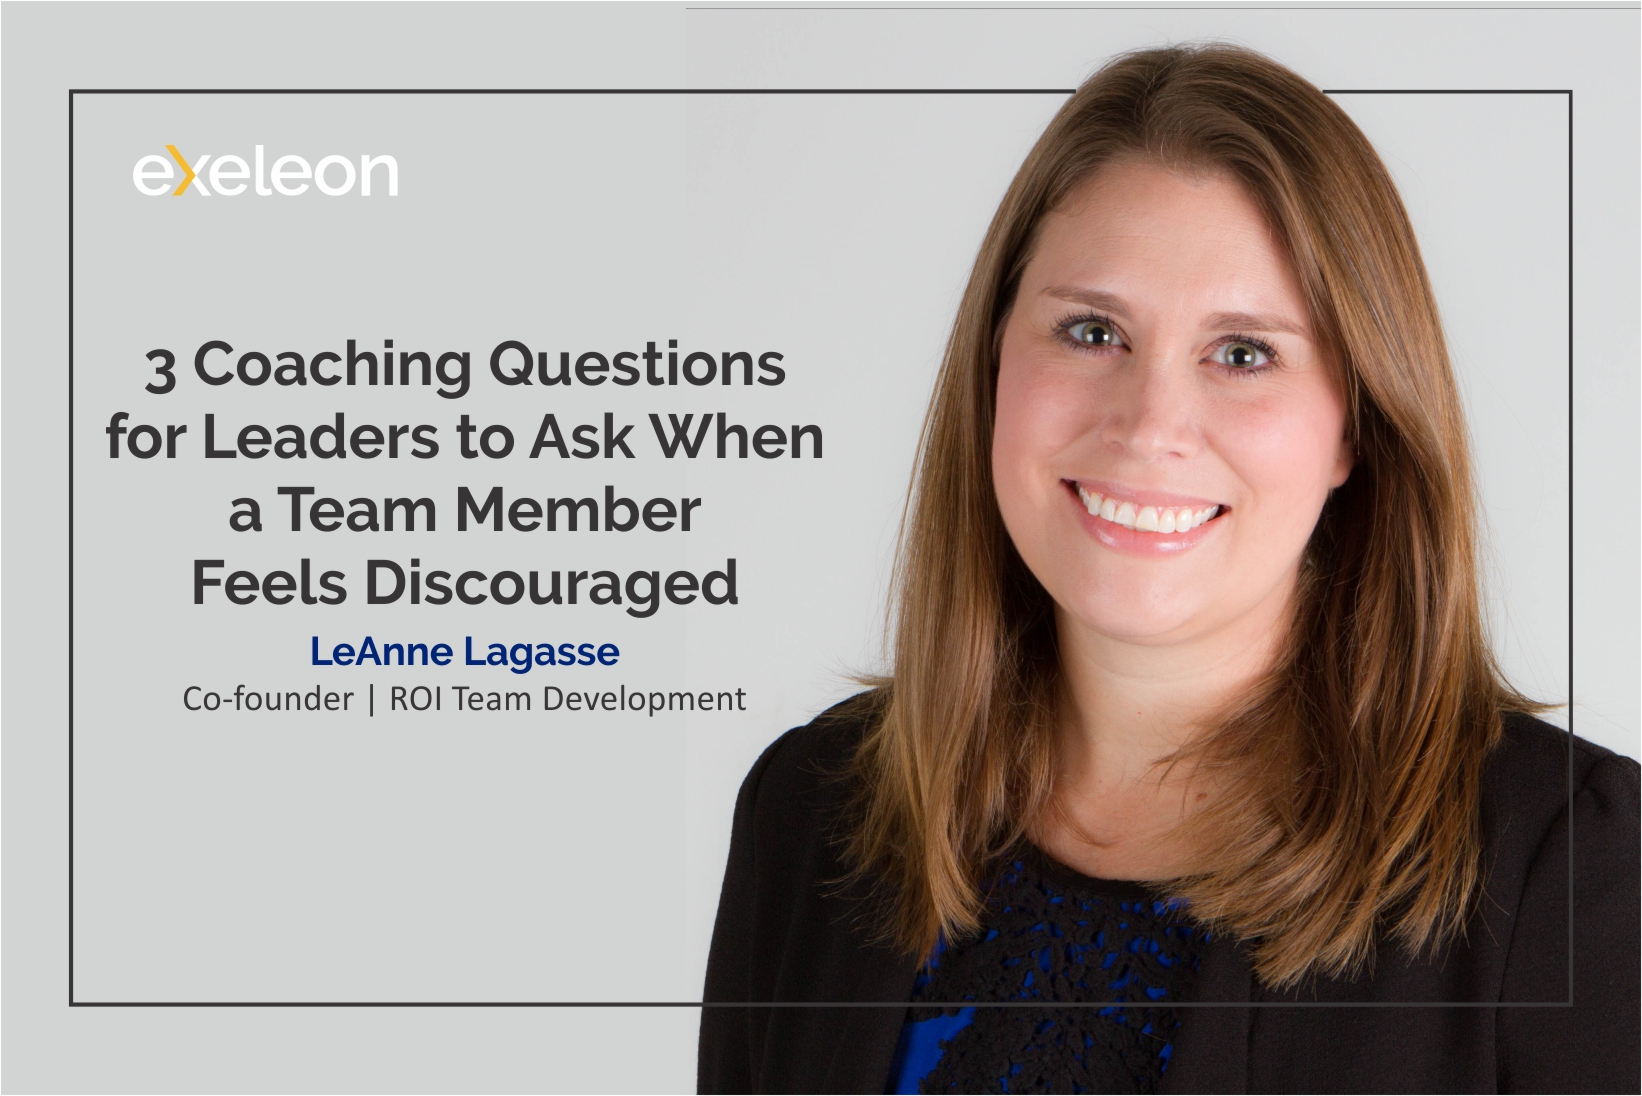 LeAnne Lagasse Talks about Leadership among Team Members